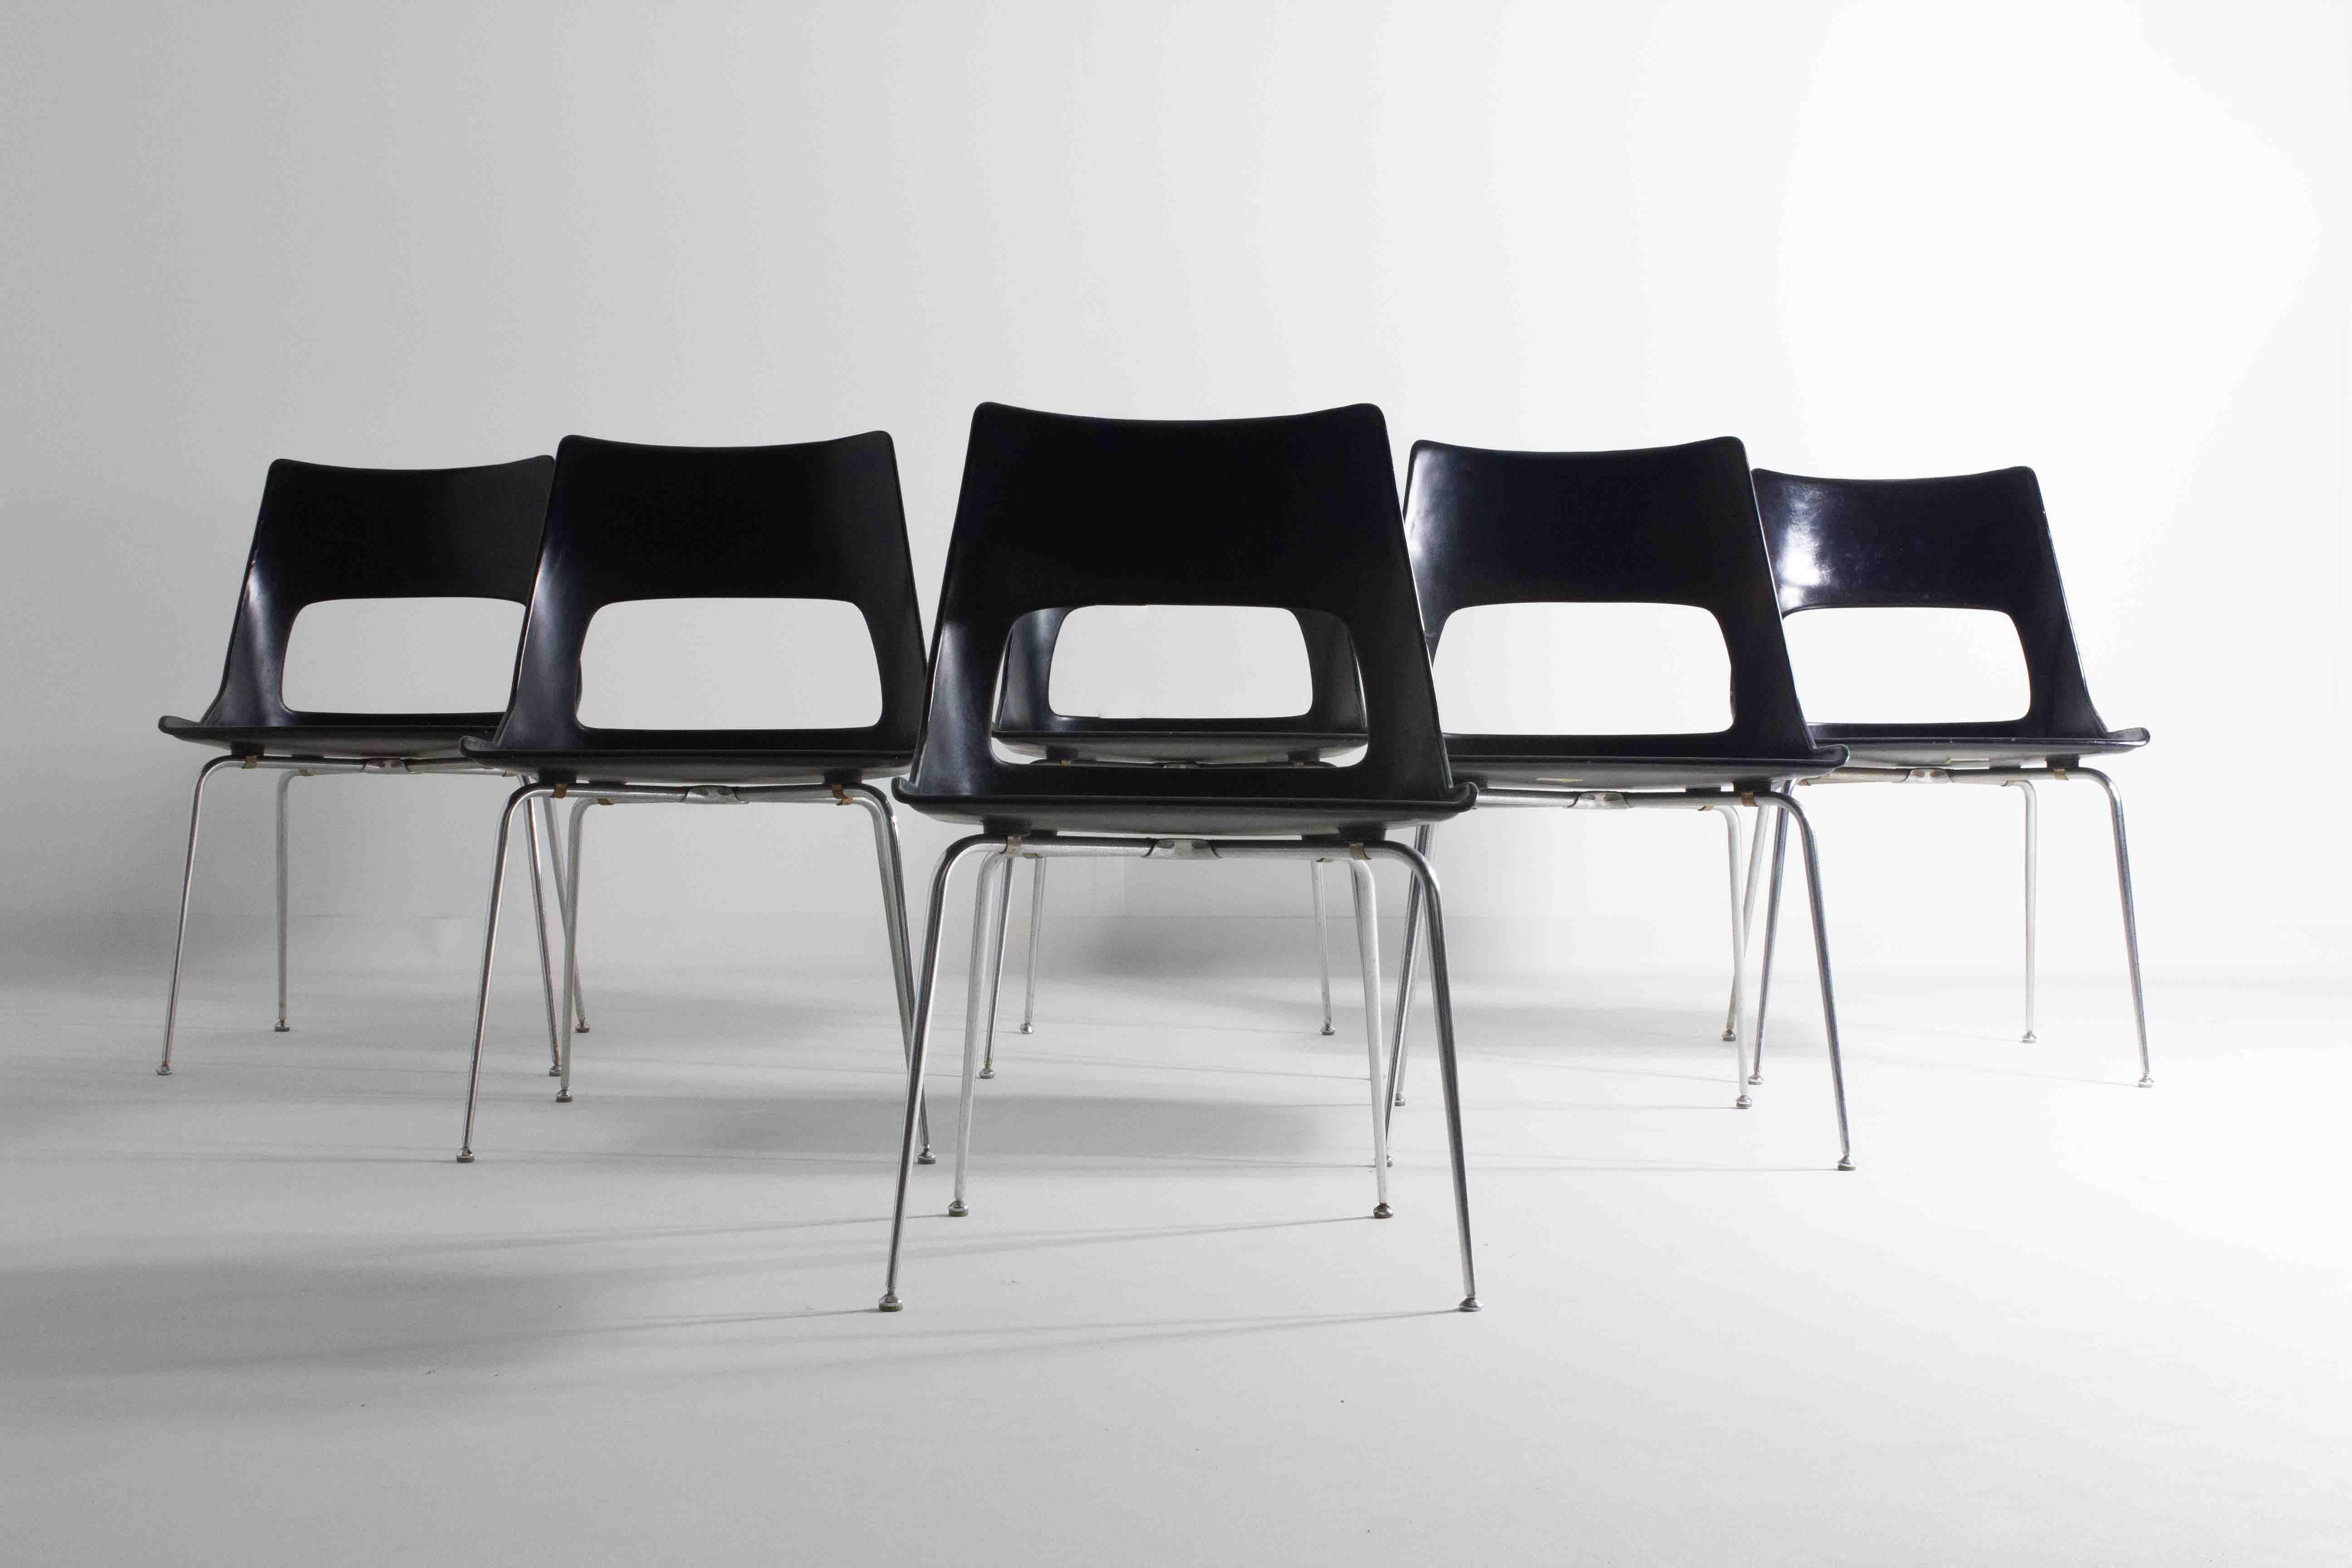 Voici un remarquable ensemble de six chaises du milieu du siècle conçues par Kaye en 1956 pour Fibrex Danmark. Ces chaises sont dotées d'une coque en plastique moulé qui reste dans son état d'origine, préservant l'authenticité et le charme du design